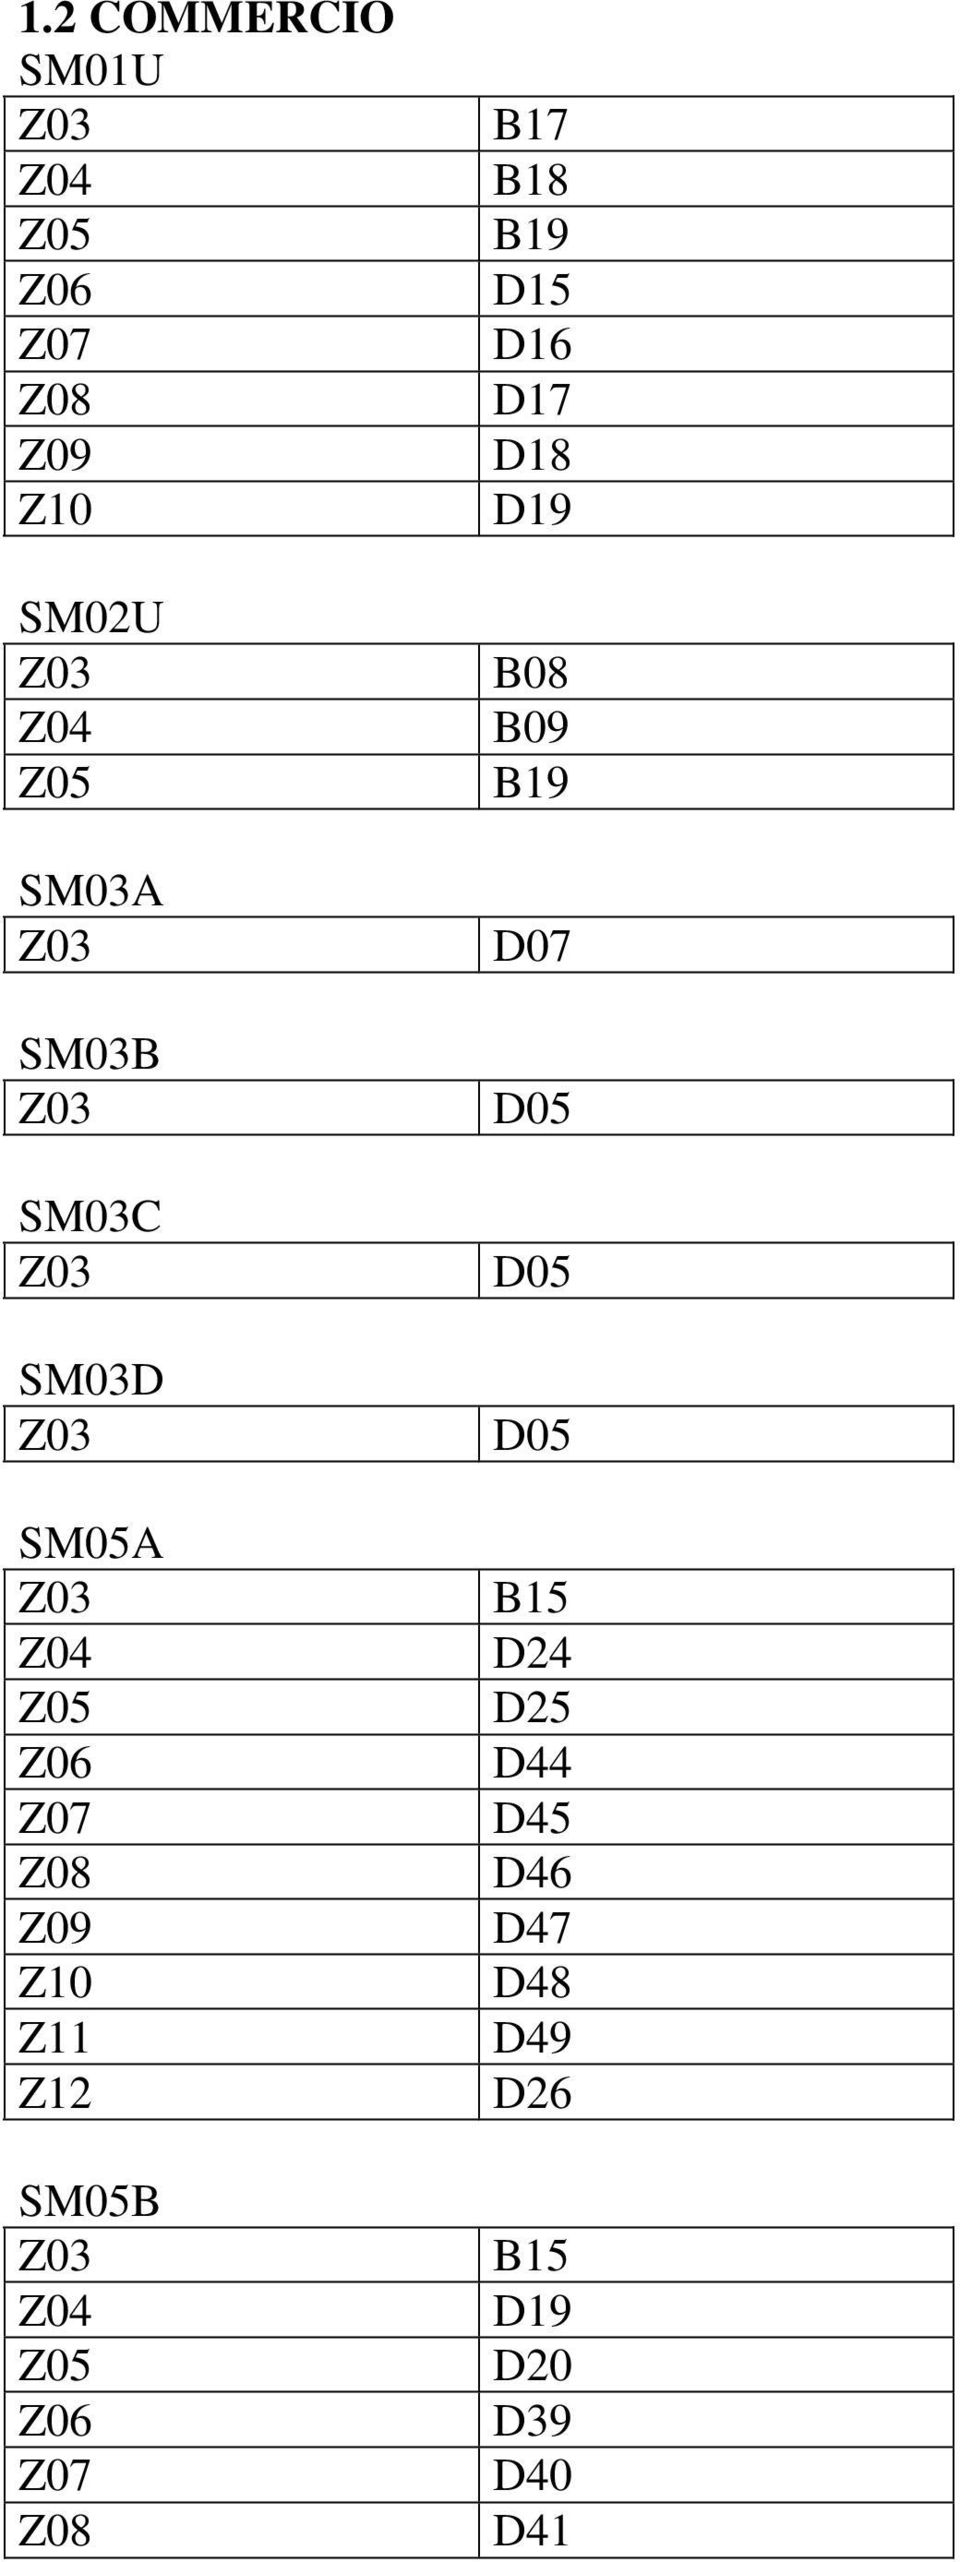 SM03C D05 SM03D D05 SM05A B15 D44 D45 D46 Z09